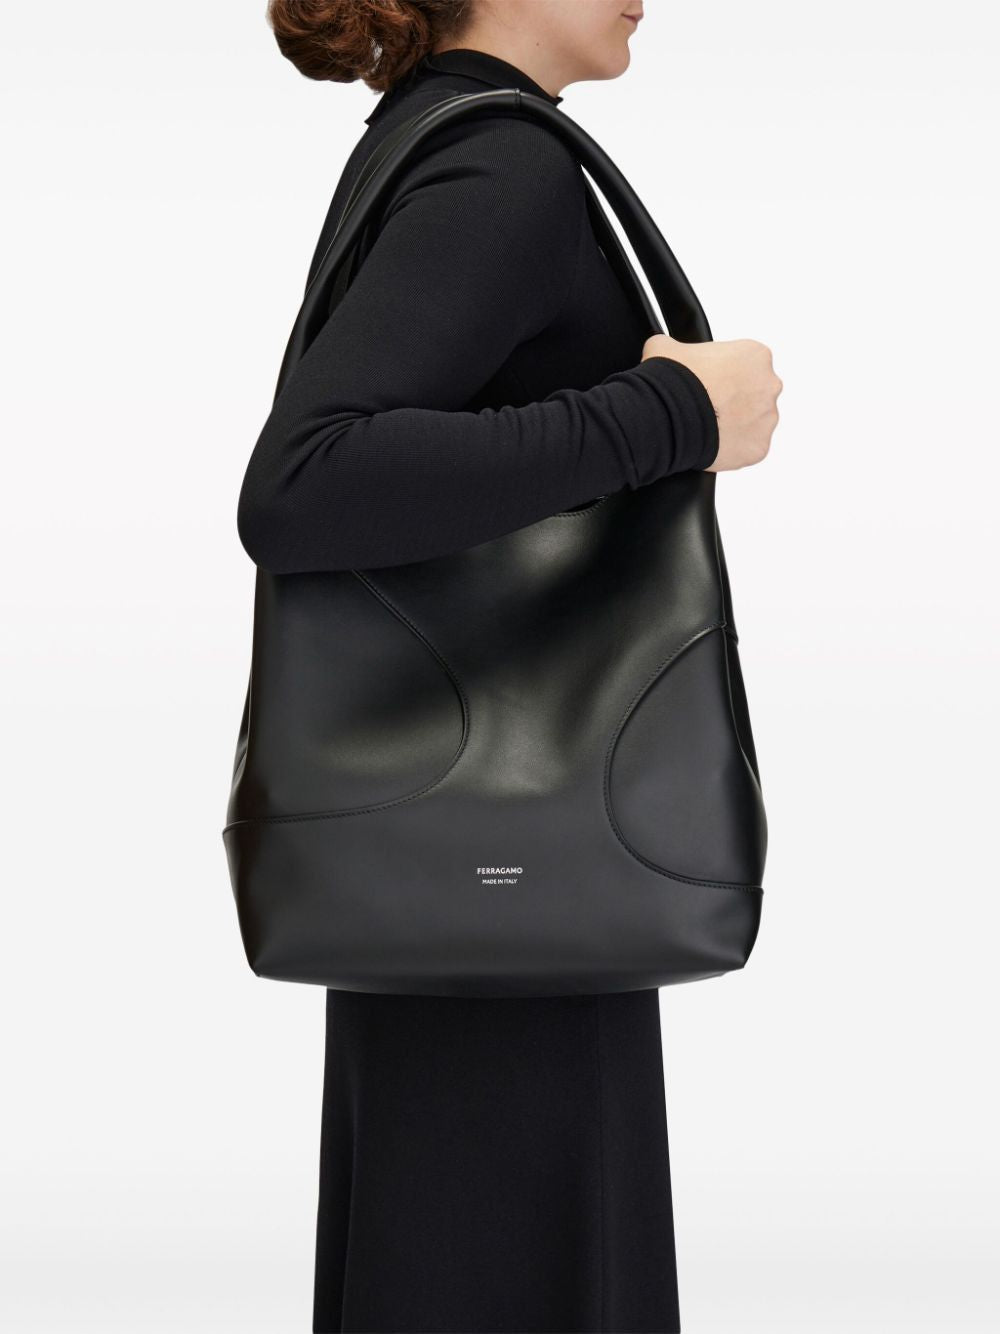 Túi xách đeo vai đen bằng da lỗ cho phái nữ